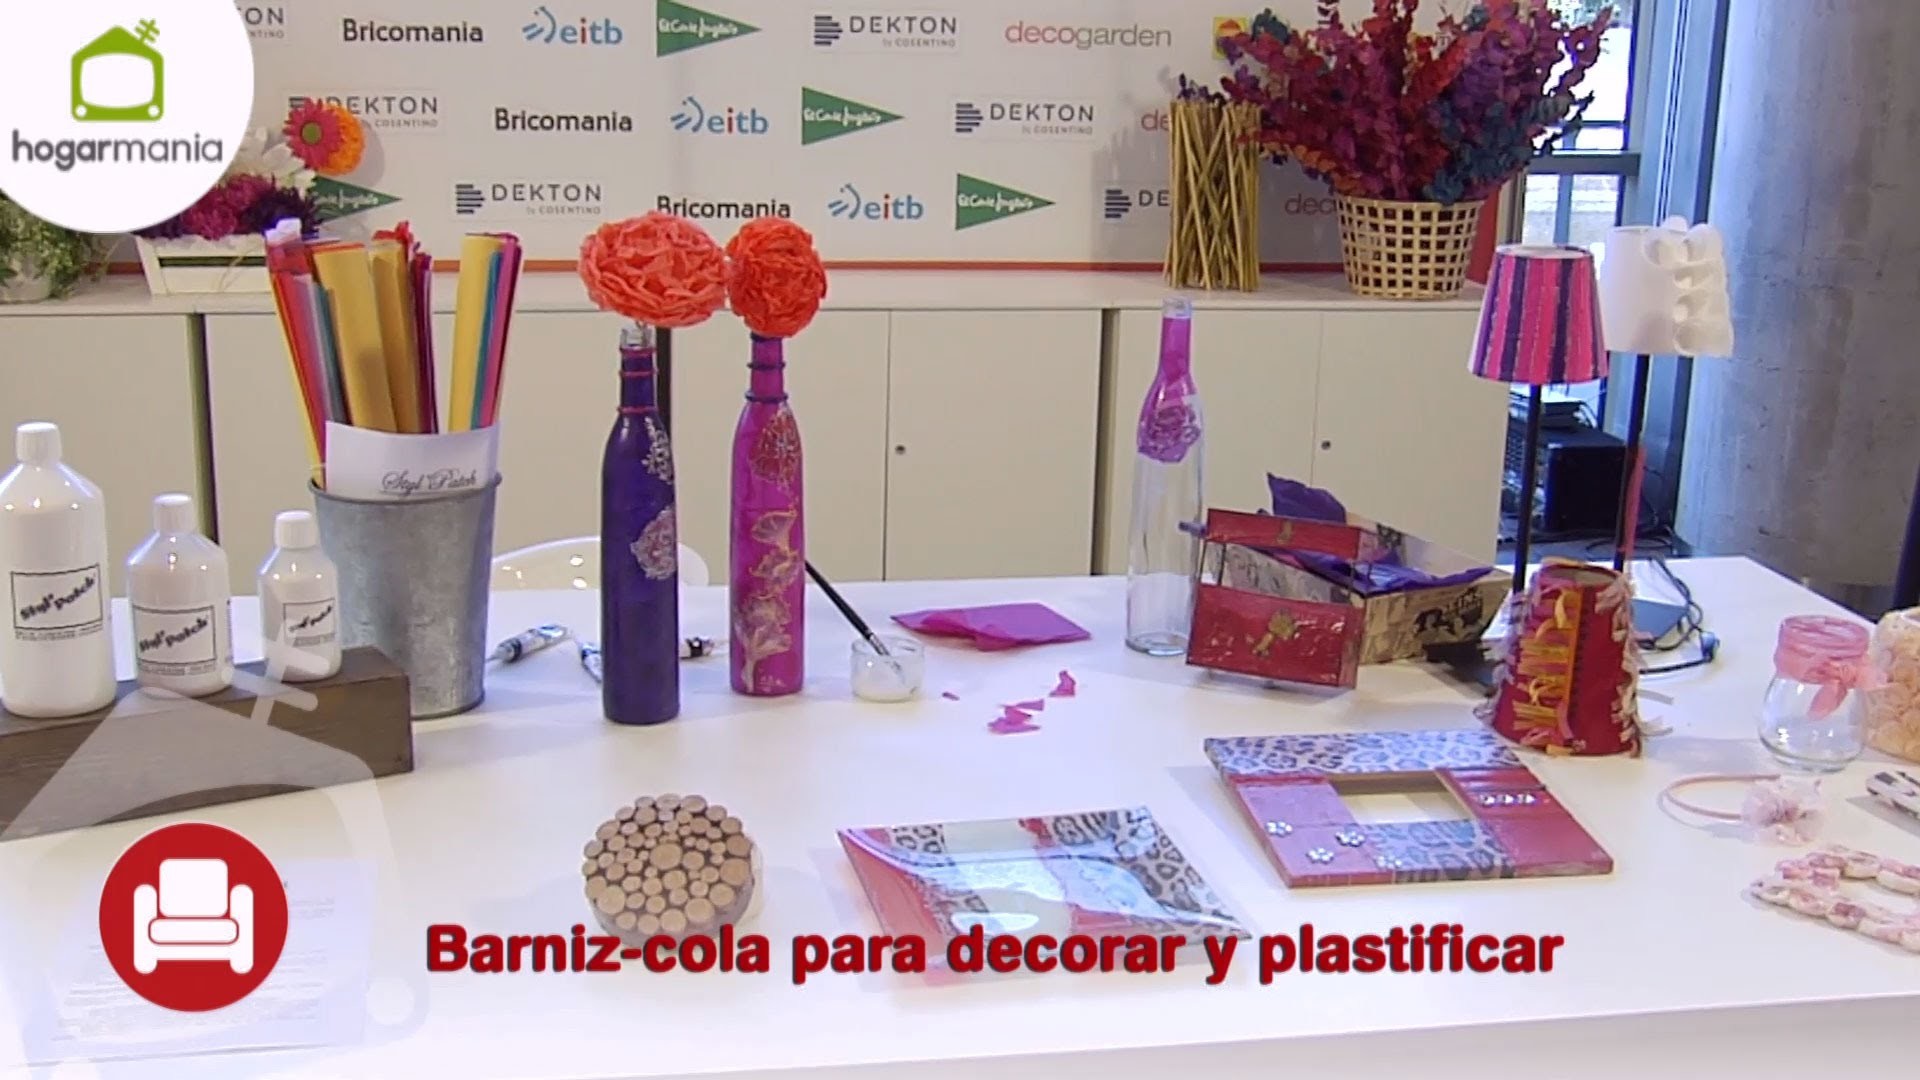 Feria Hogarmania: Barniz-cola para decorar y plastificar